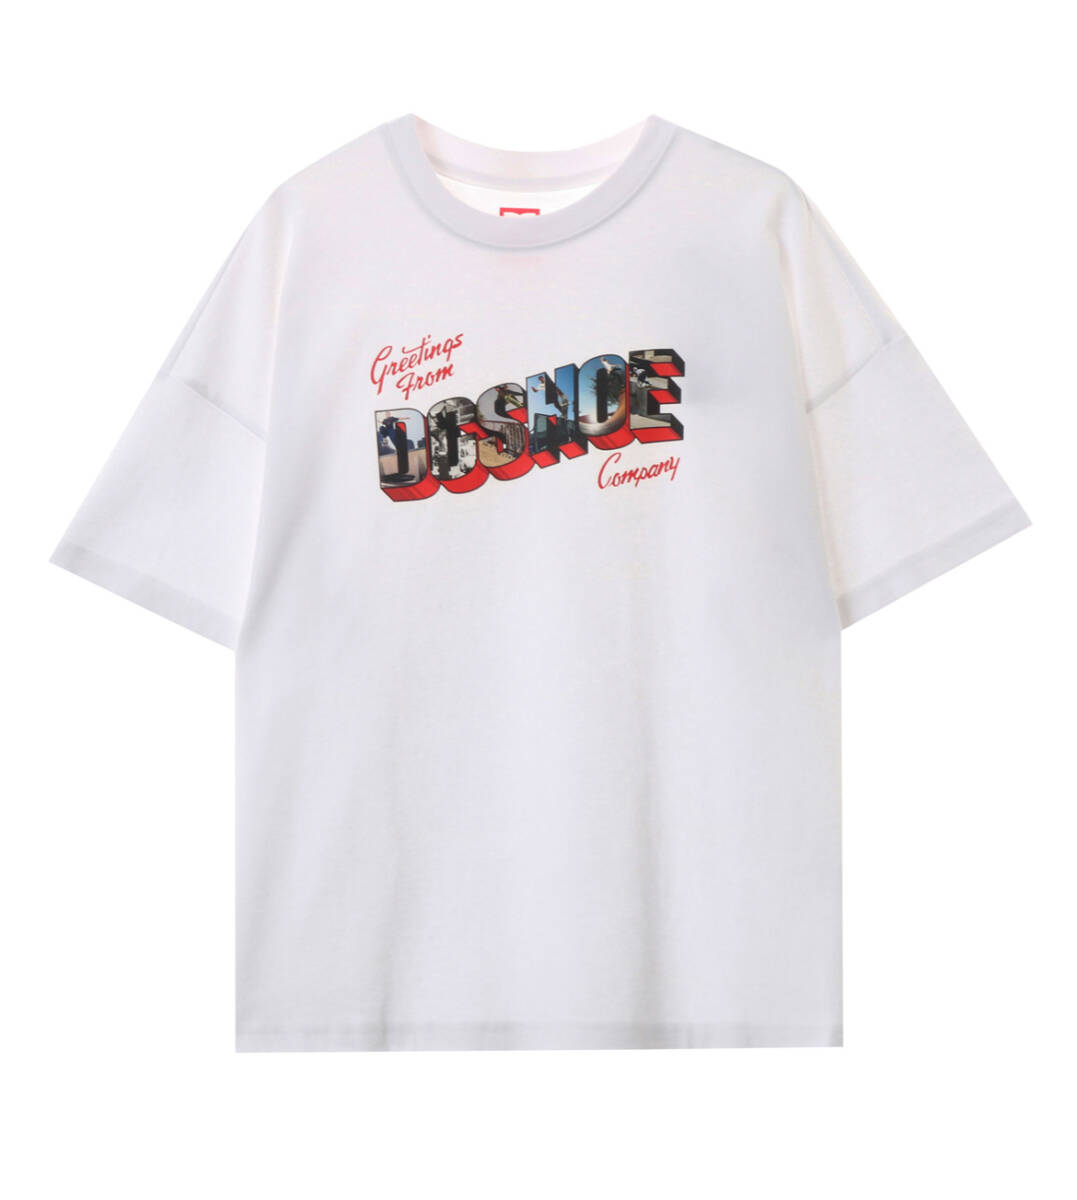 DC SHOES/Tシャツ/半袖/ディーシー /レディース/ジュニア/ロゴ